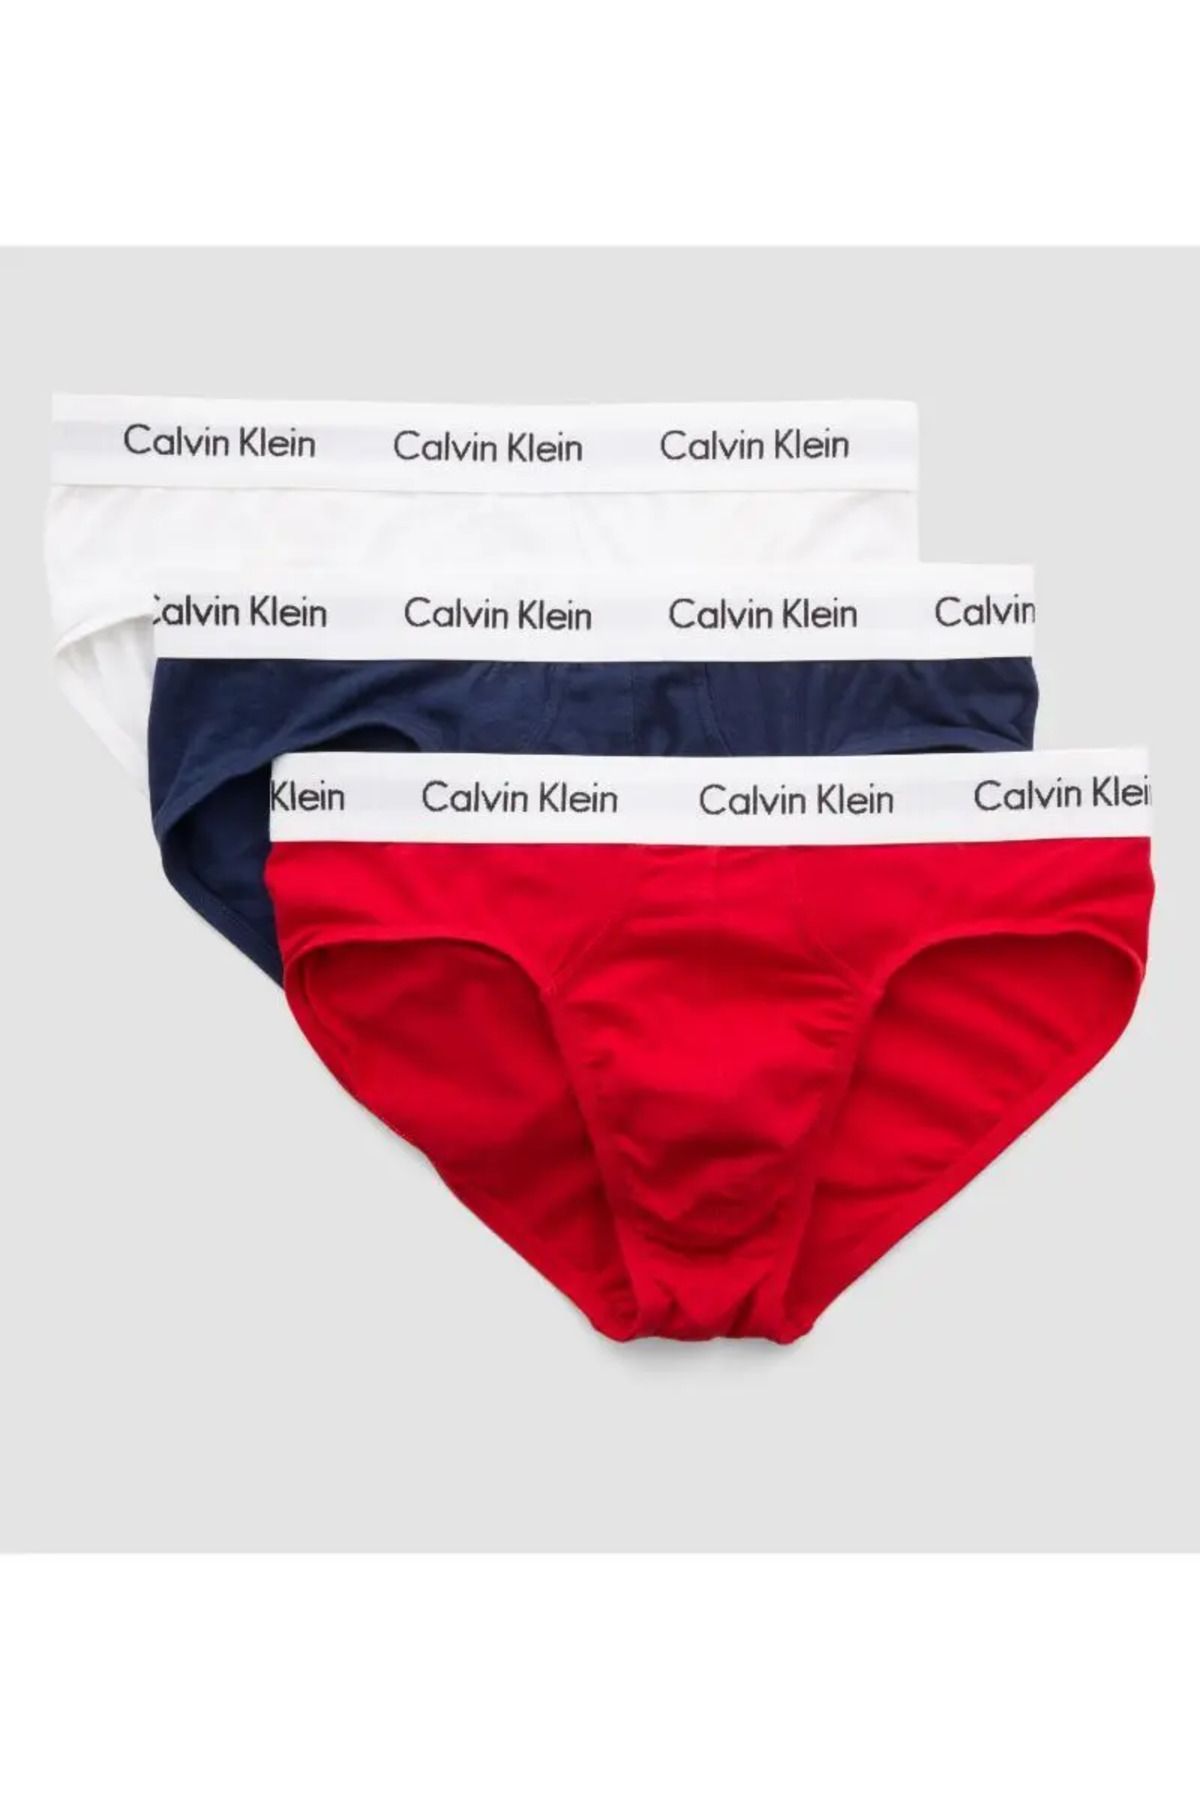 Calvin Klein Erkek Marka Logolu Elastik Bantlı Günlük Kullanıma Uygun Beyaz-lacivert-kırmızı Boxer 0000u2661g-ı03